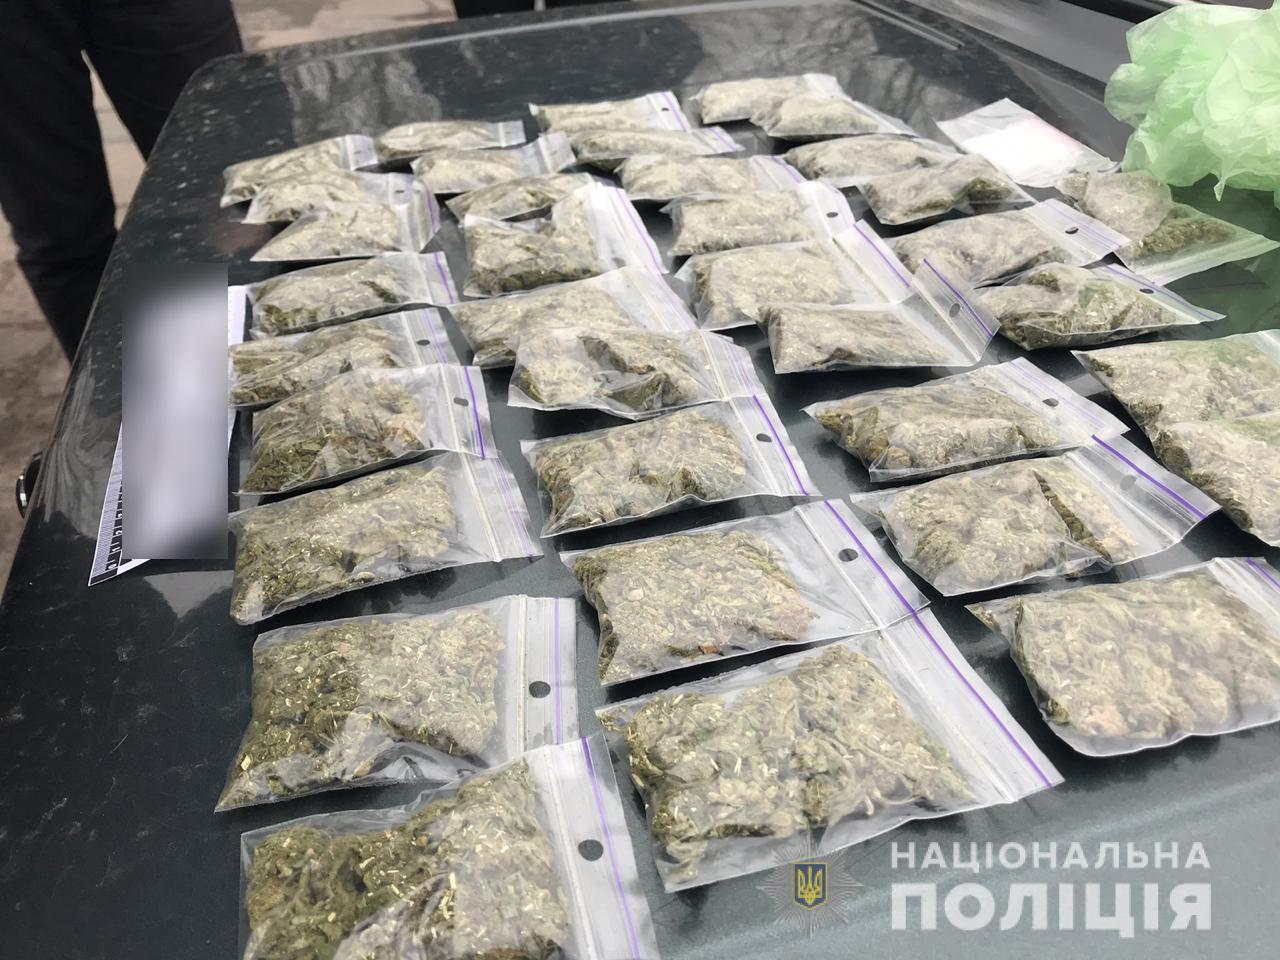 Сколько грамм марихуаны при себе украине что случилось с tor browser hydra2web